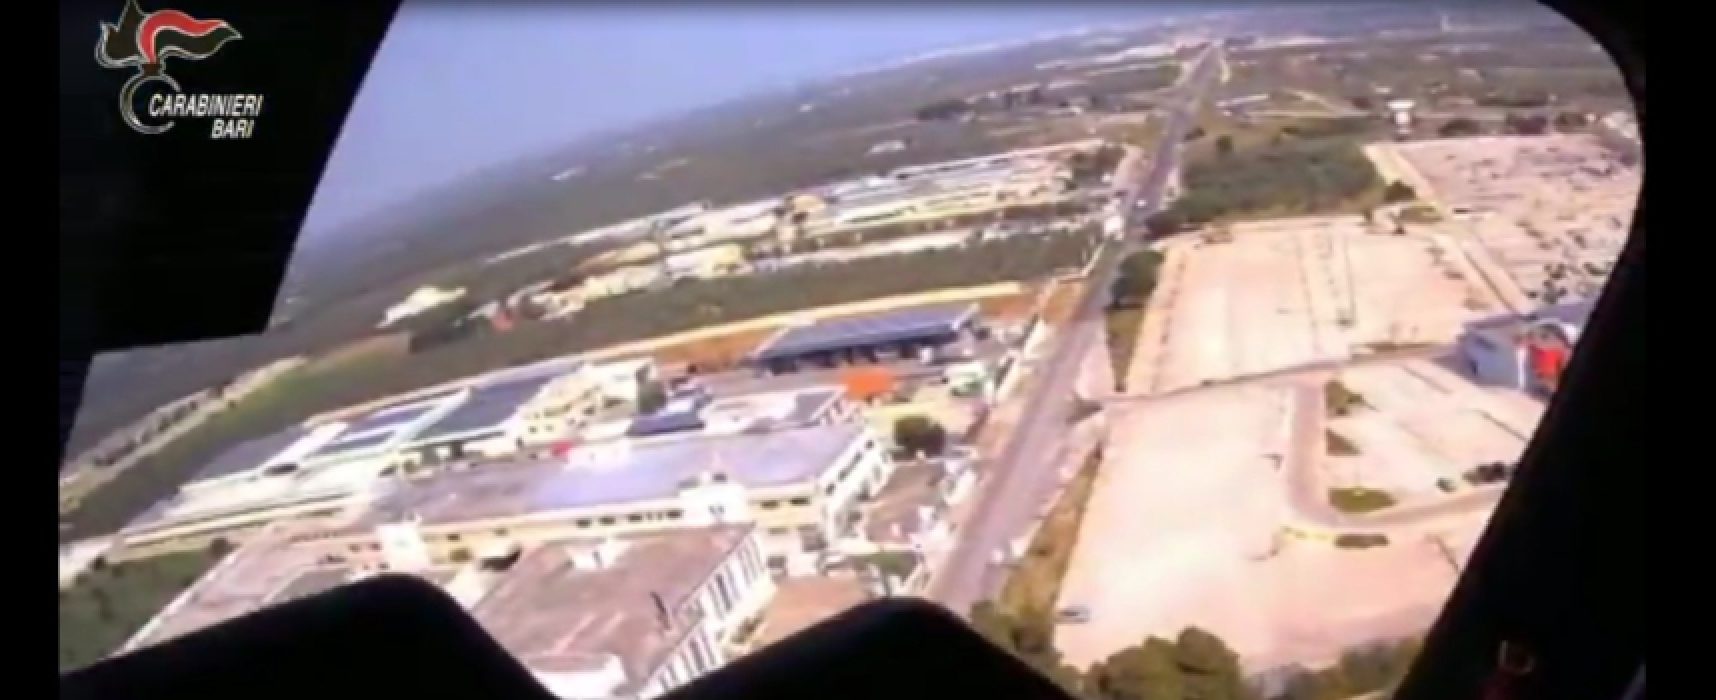 Intensificazione controlli nella Bat, Cc: “Tavolata su terrazzo scoperta da elicottero” / VIDEO